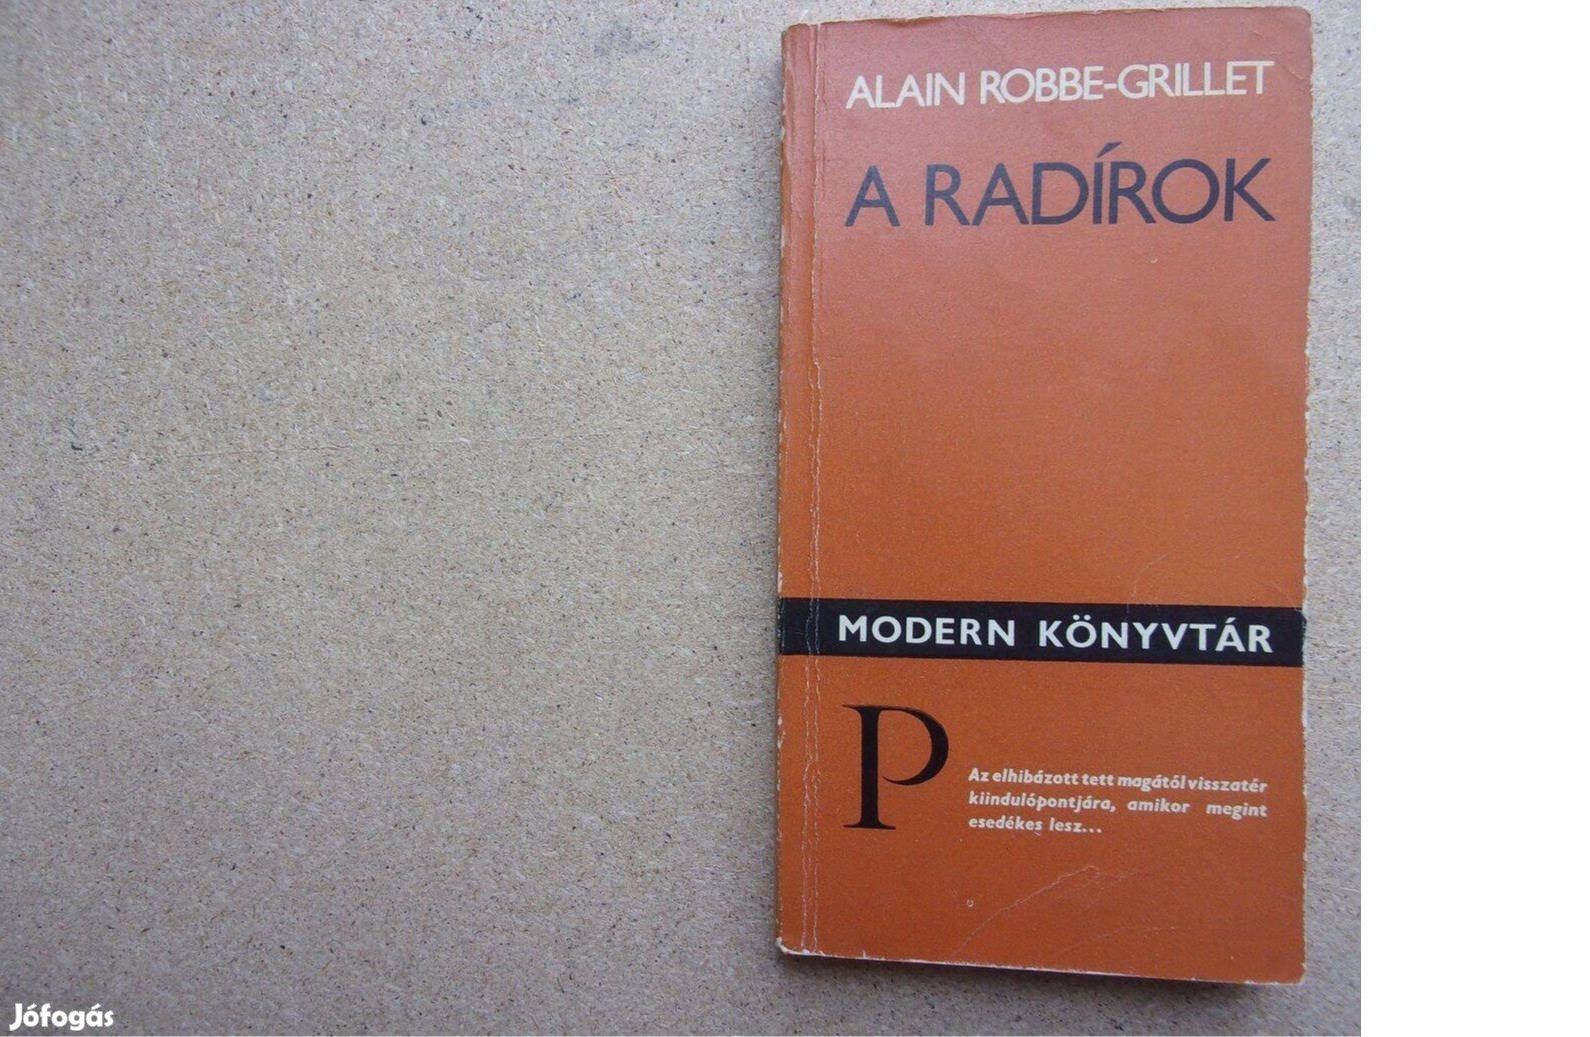 Alain Robbe-Grillet: A radírok ( modern könyvtár )